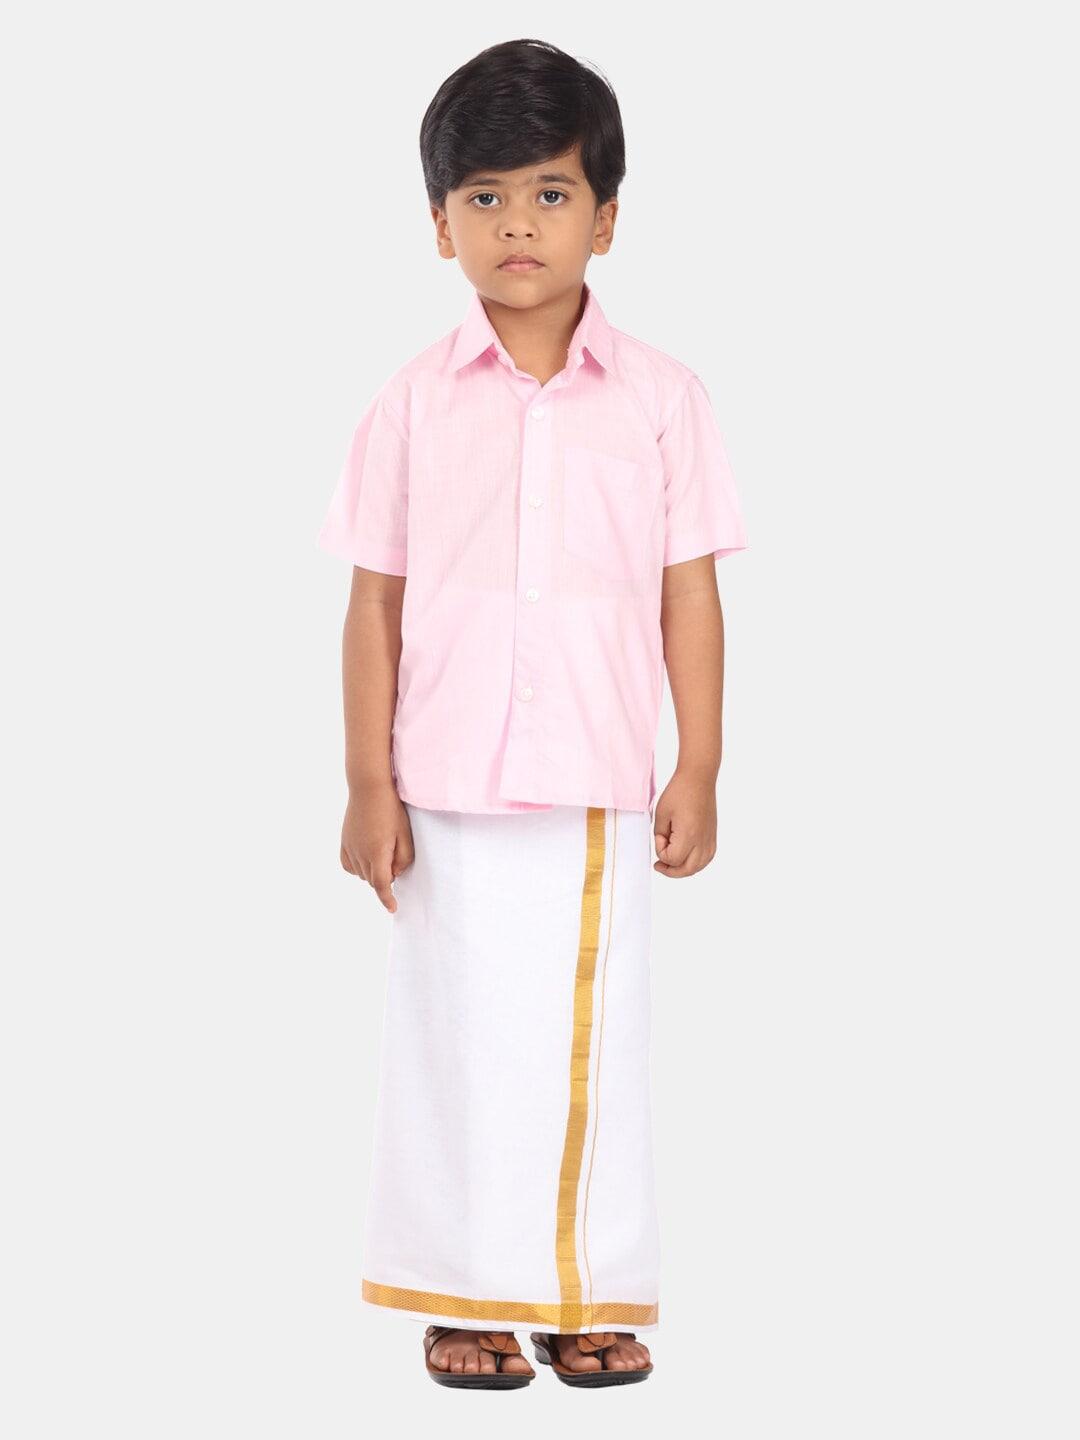 Sethukrishna Boys Pure Cotton Clothing Set